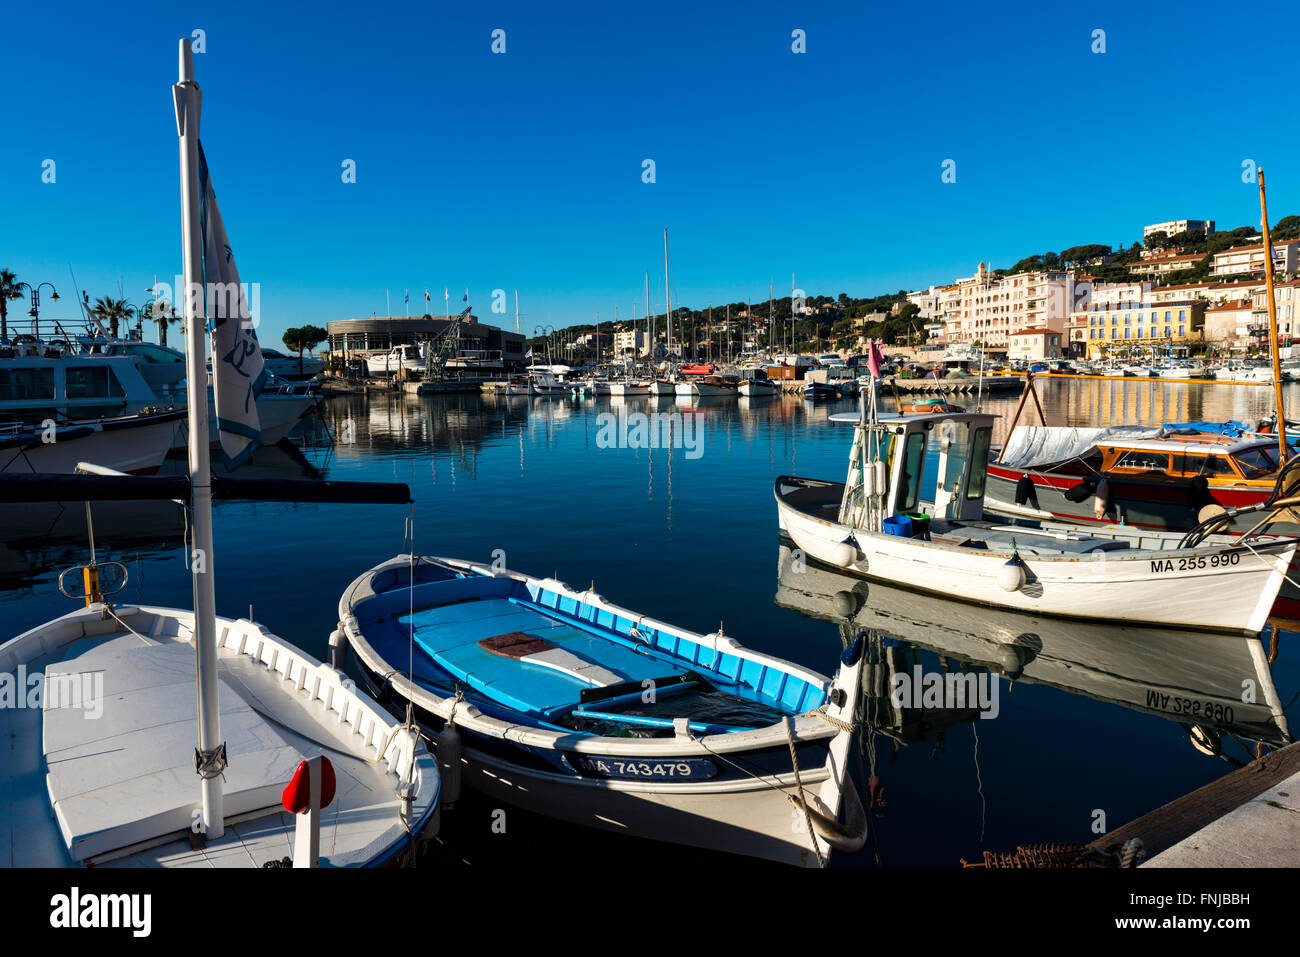 port de Cassis, bouche du rhone,13 paca,France Stock Photo - Alamy